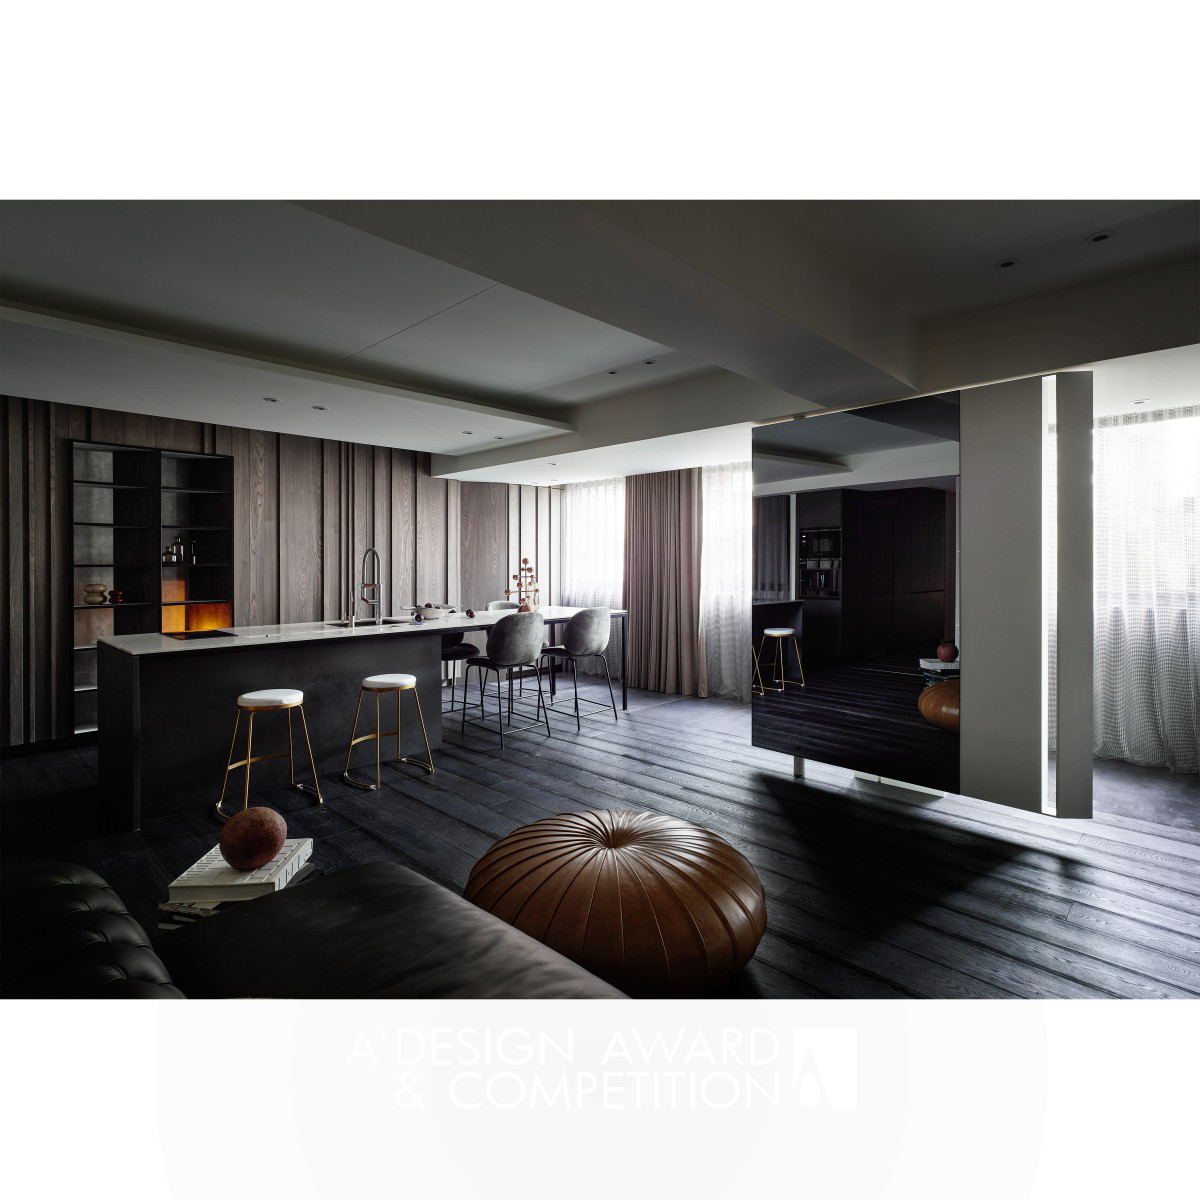 Option 270 Degrees Residential House by Studio.Ho Design Ltd.